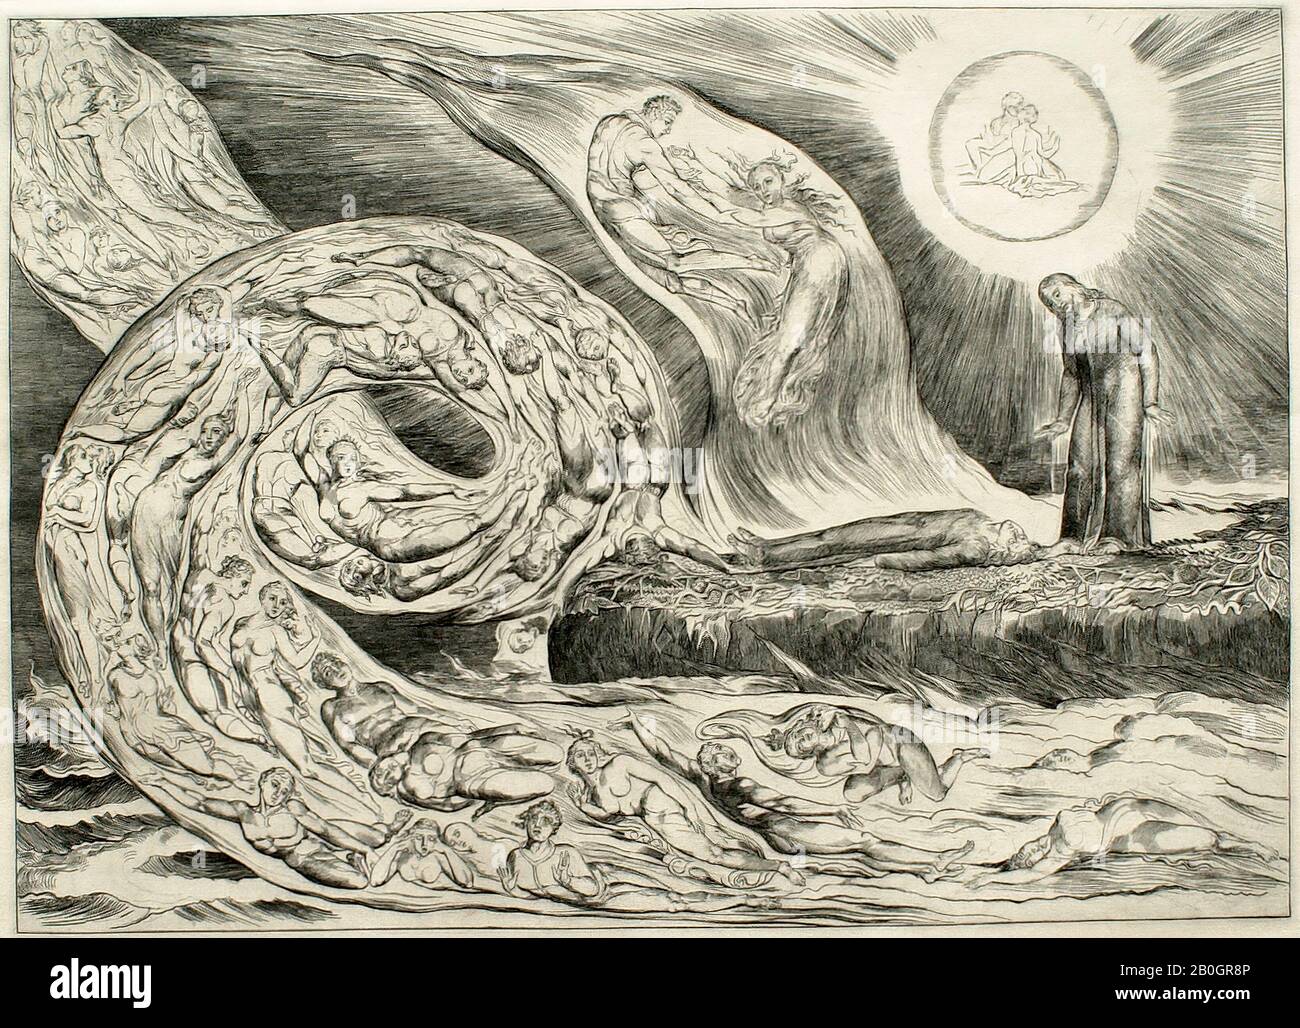 Dante's Inferno: Filme chega ao Star+ em dezembro